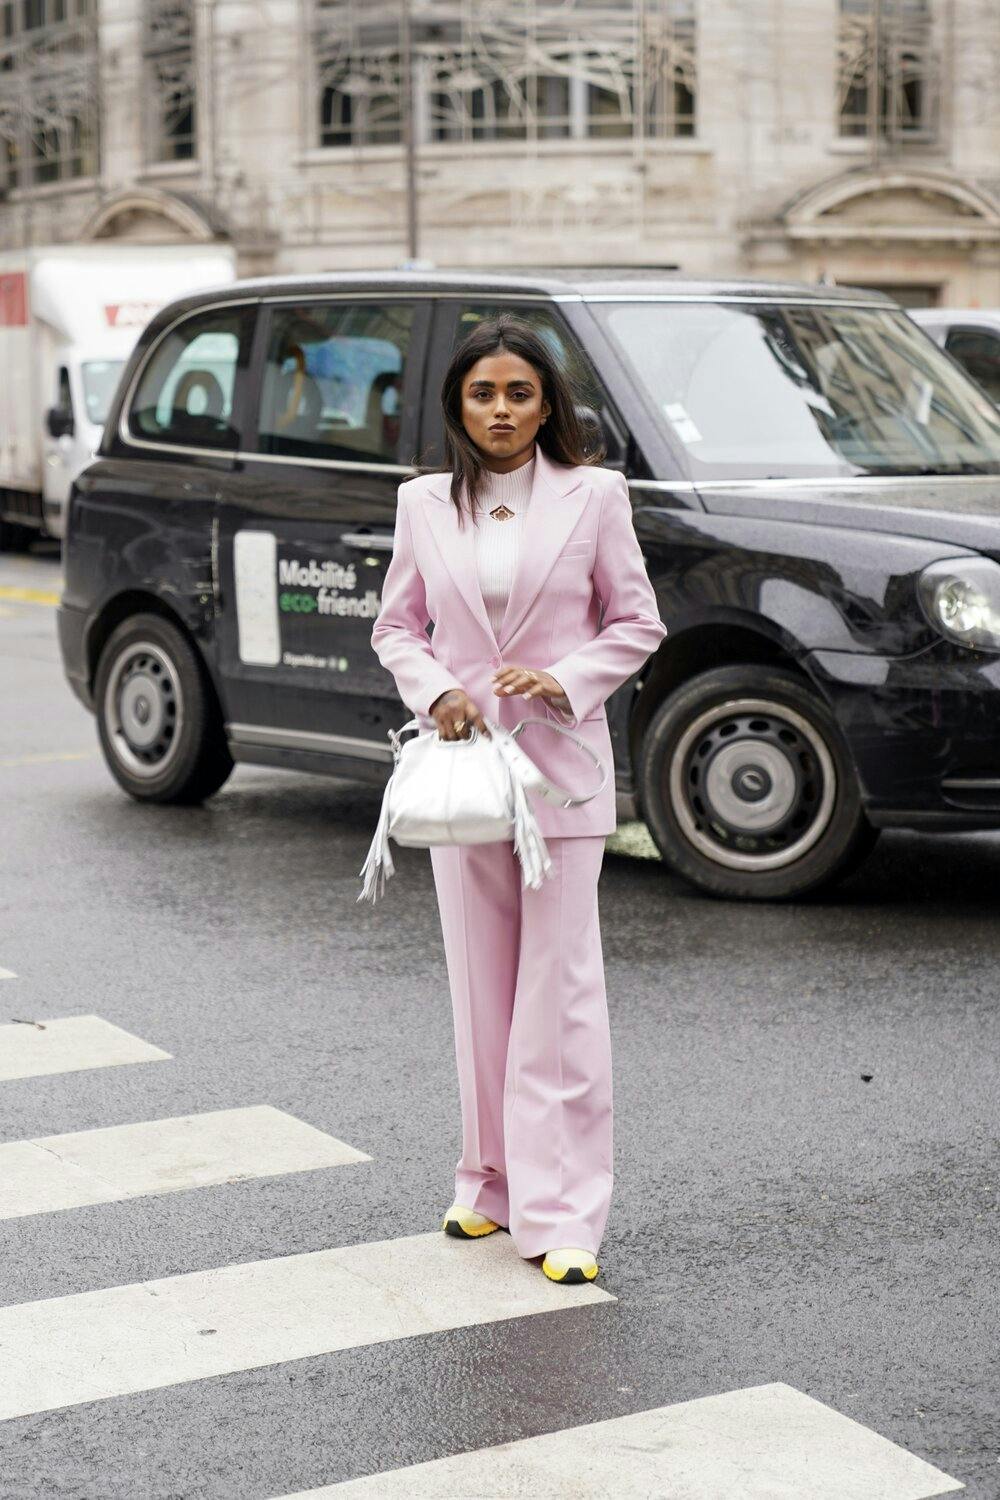 Sachini Dilanka wearing a Pinko Maje suit in Paris